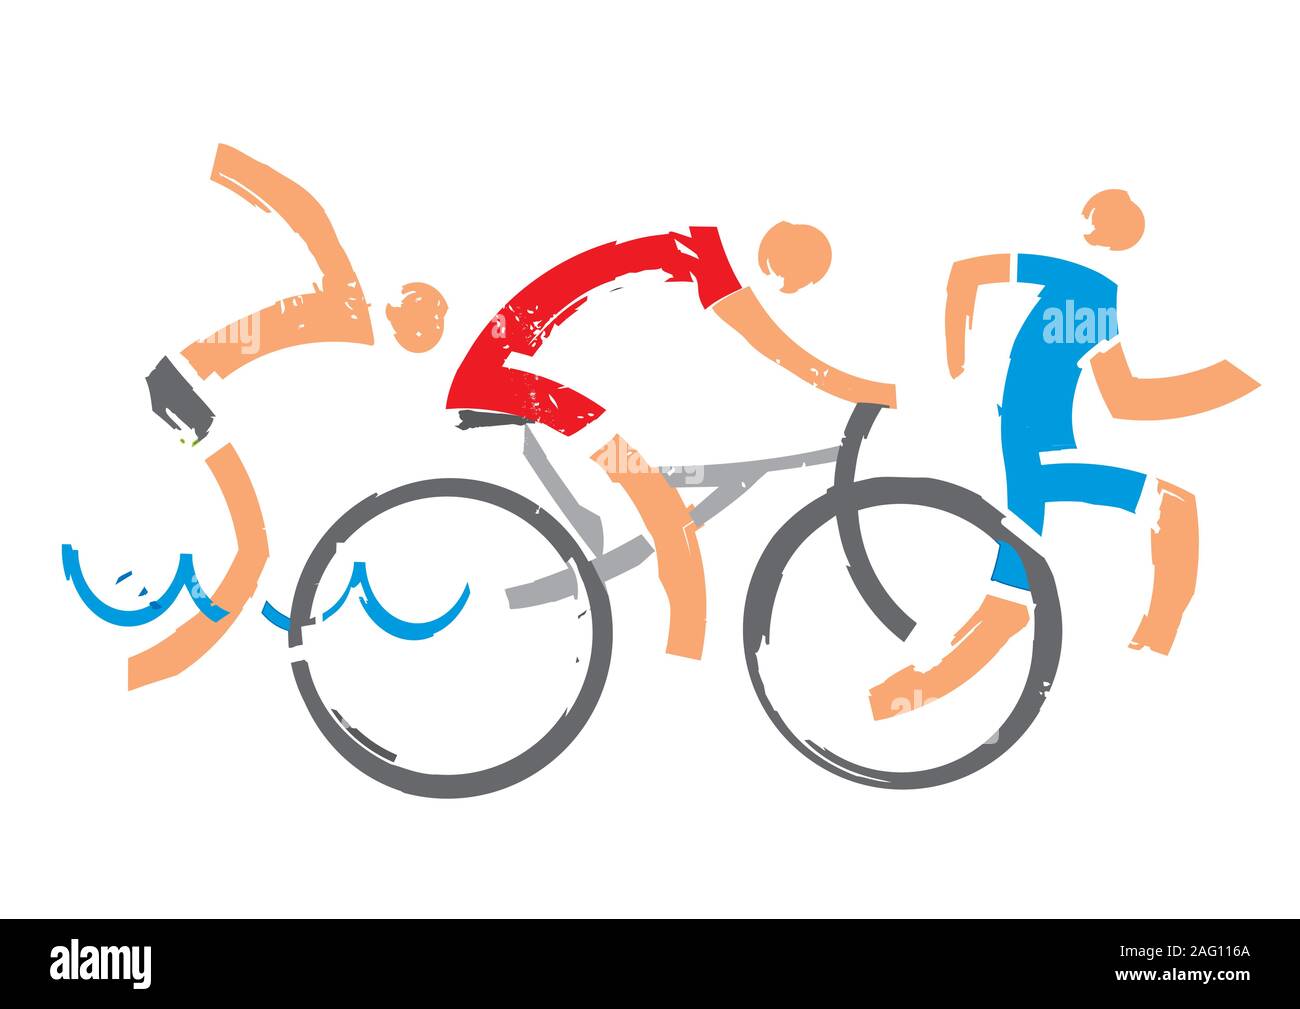 Nuotatore, ciclista, corridore. Tre triathlon atleti stilizzati espressivi. Isolato su sfondo bianco. Vettore disponibile. Illustrazione Vettoriale